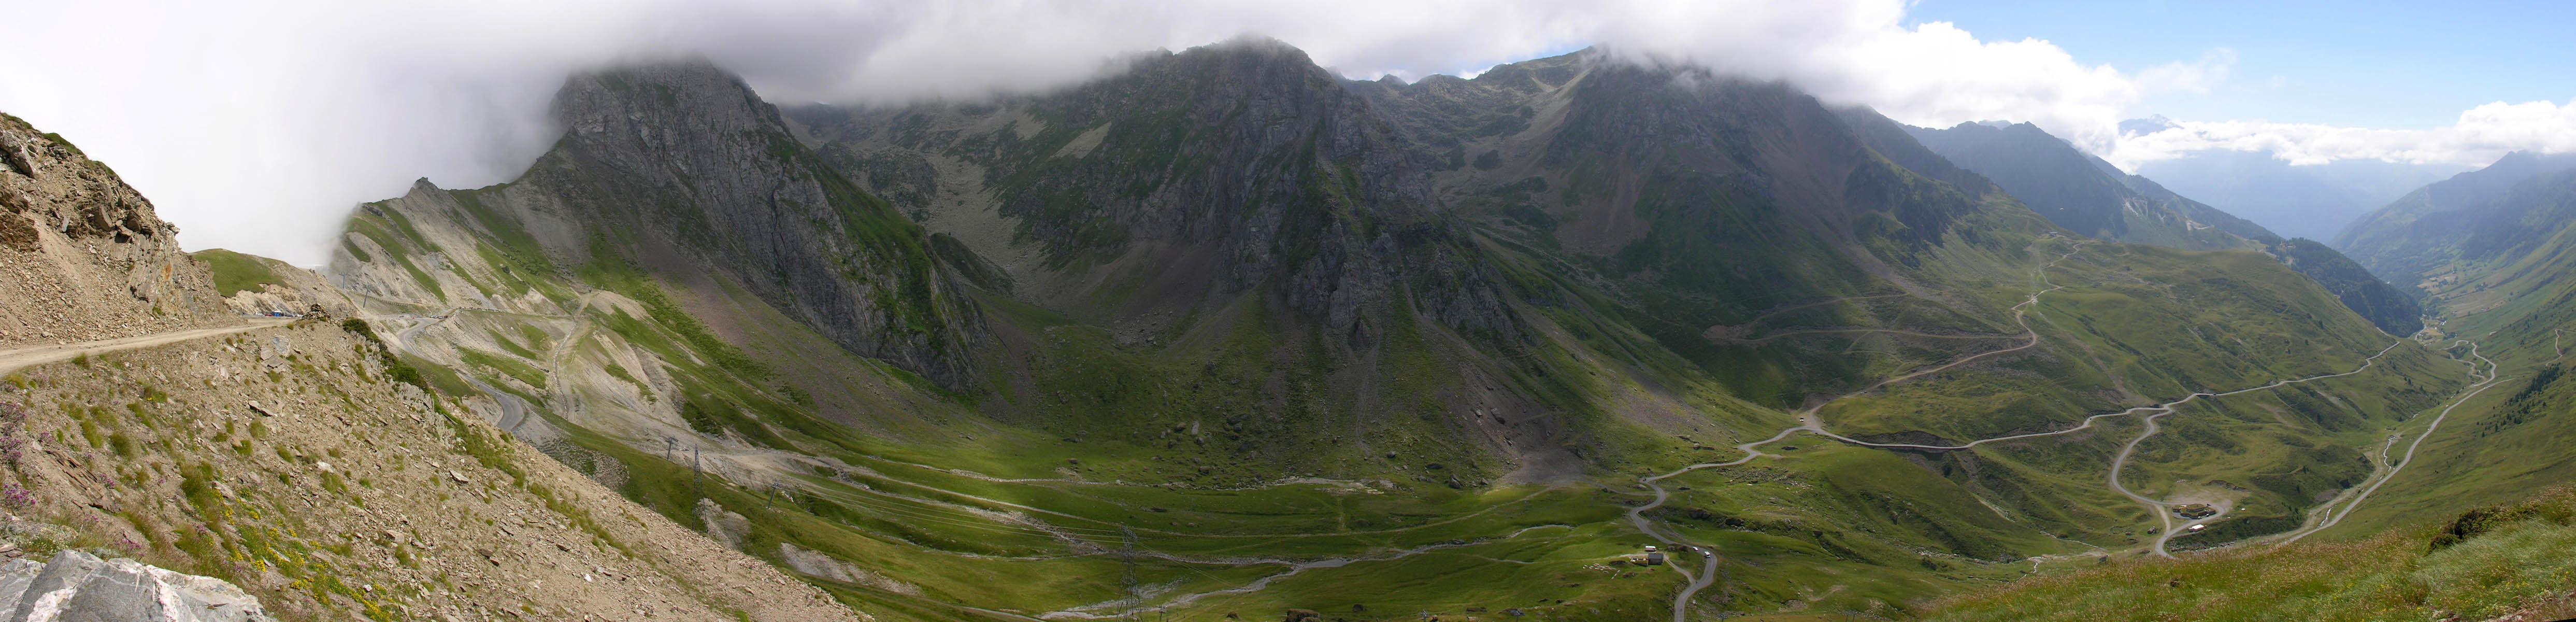 Mountain pass of Tourmalet - France.jpg